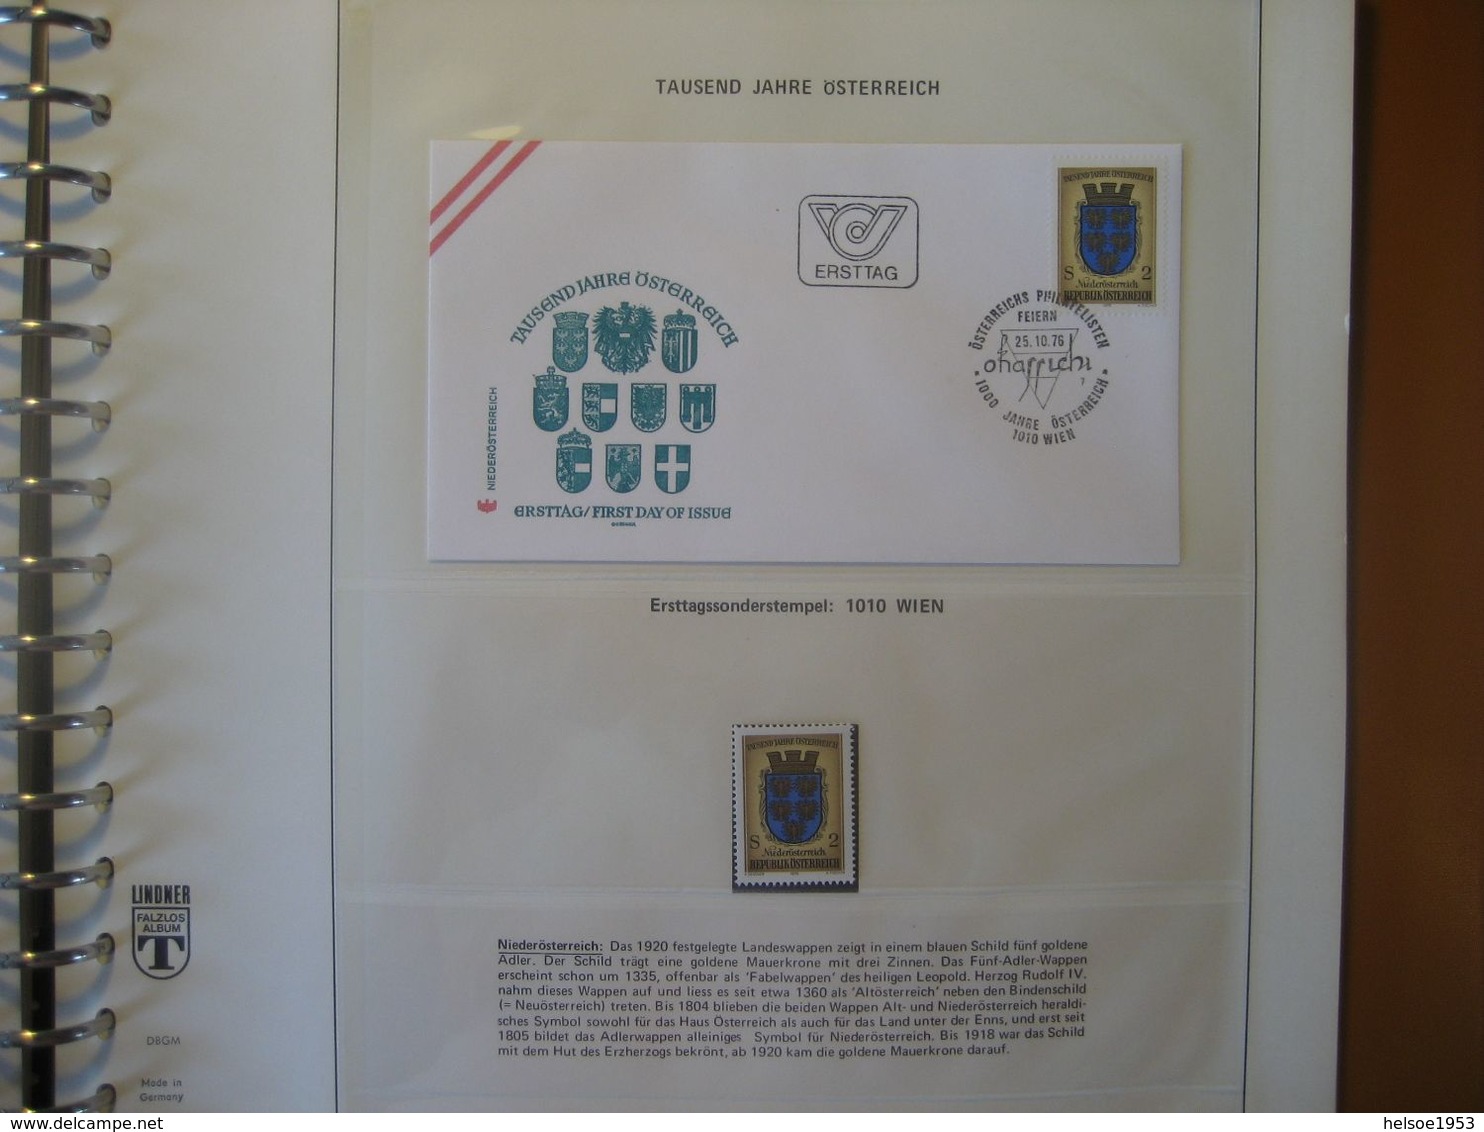 Österreich 1976- 1000 Jahre Österreich dokumentiert in Blocks, Kuverts und Marken mit Sonderstempel aller 9 Bundesländer